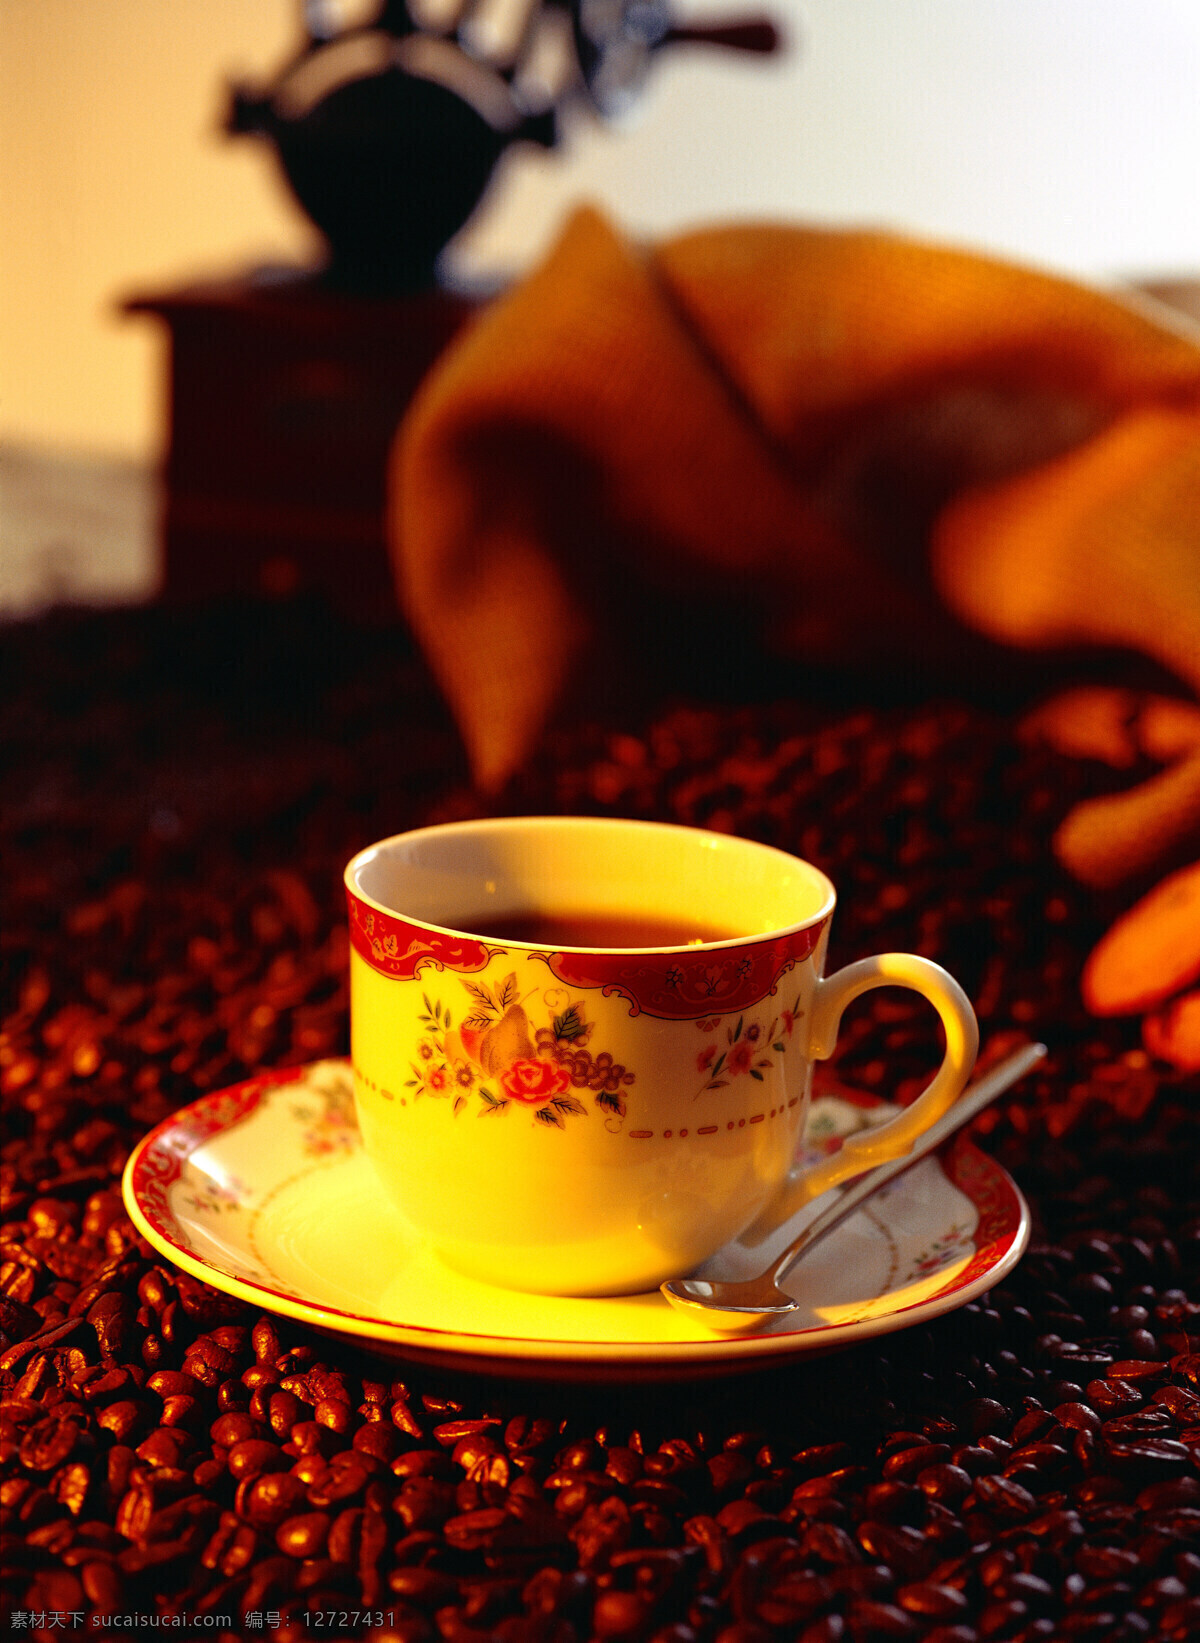 褐色 咖啡豆 咖啡 一堆咖啡豆 颗粒 果实 饱满 许多 很多 coffee 浓香 托盘 杯子 勺子 麻袋 包装 铺垫 高清图片 咖啡图片 餐饮美食